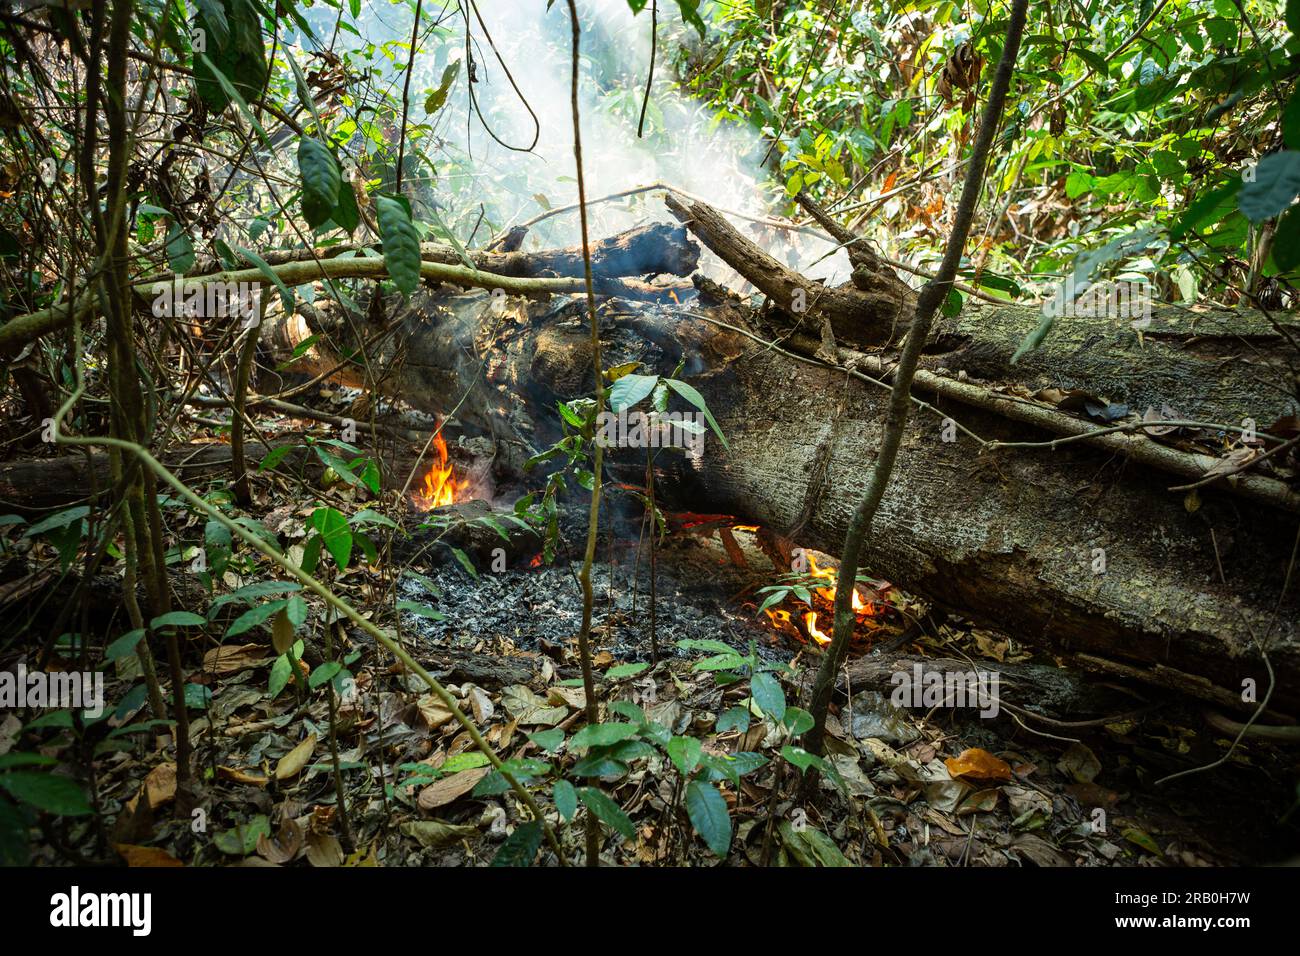 Coupe d'arbres brûlant dans la déforestation illégale de feu dans la forêt amazonienne. Amazonas, Brésil. Concept d'environnement, écologie, changement climatique, global Banque D'Images